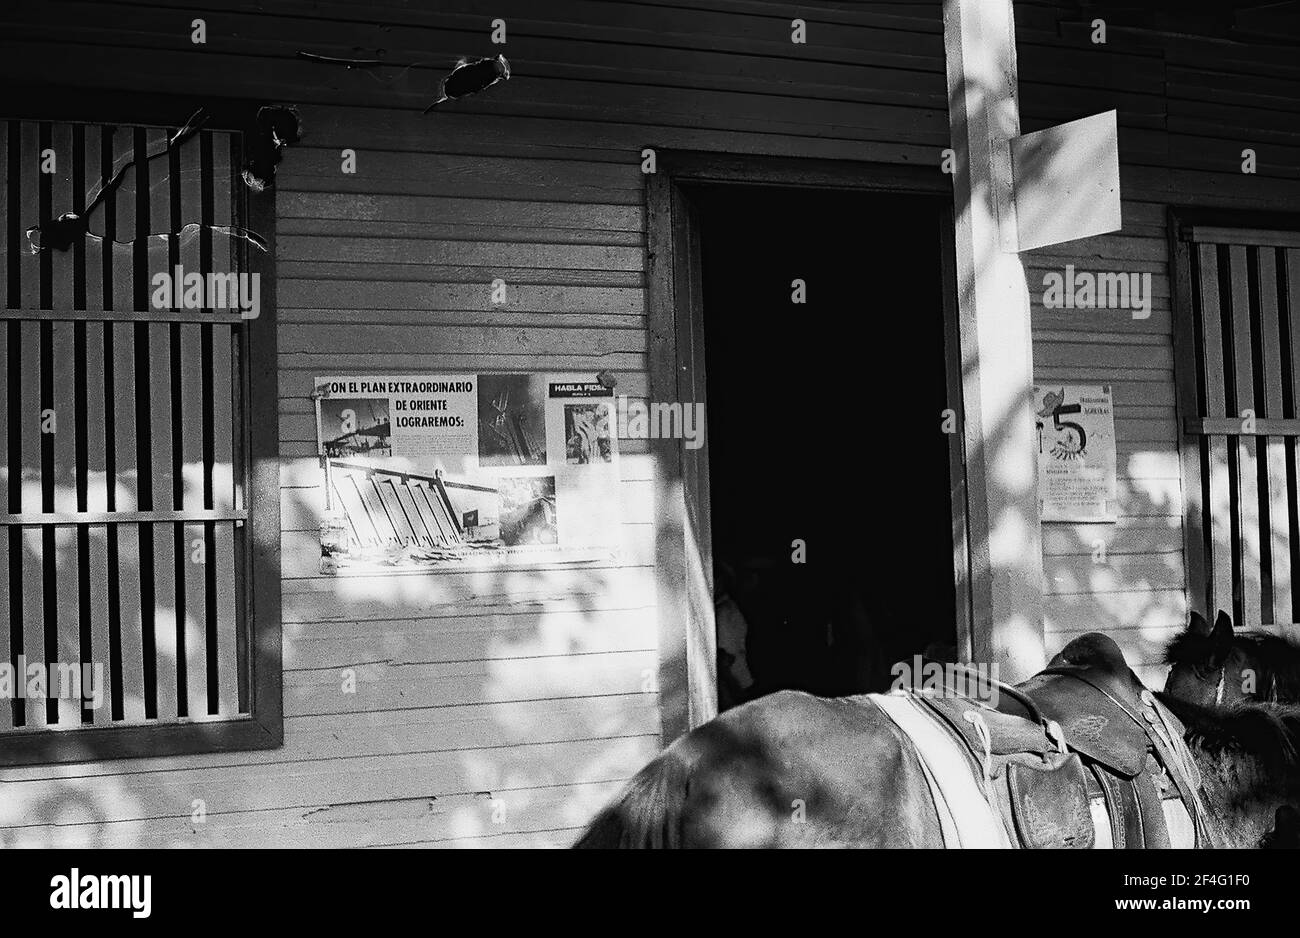 Un bâtiment avec des barres sur ses fenêtres est visible au-dessus de l'arrière d'un cheval Biran, Cuba, province de Holguin, 1963. De la collection de photographies Deena Stryker. () Banque D'Images